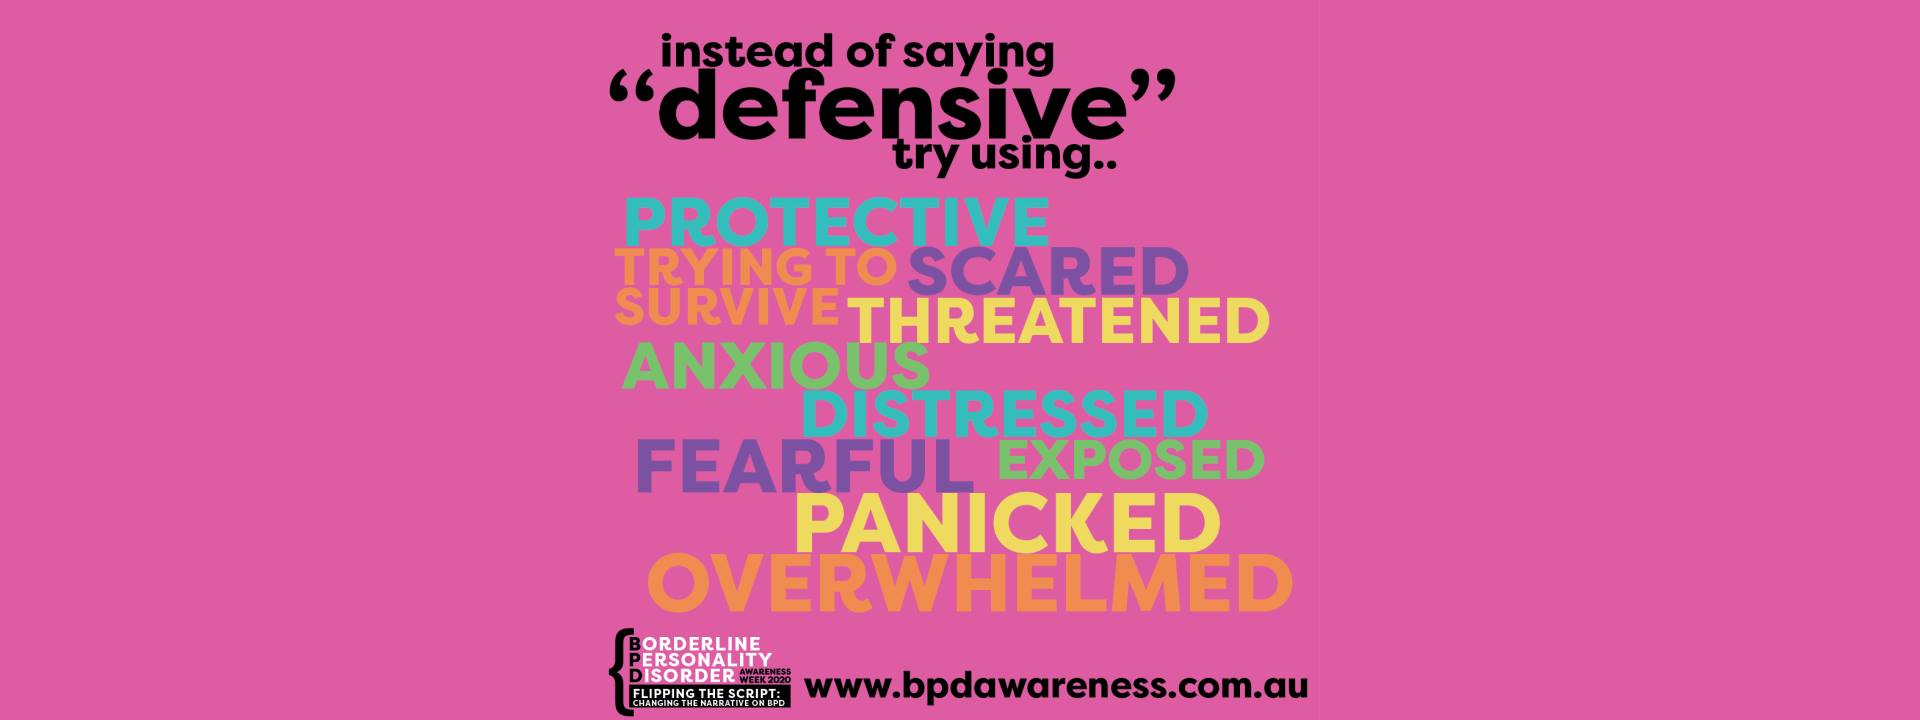 BPD Awareness Week - Not Defensive